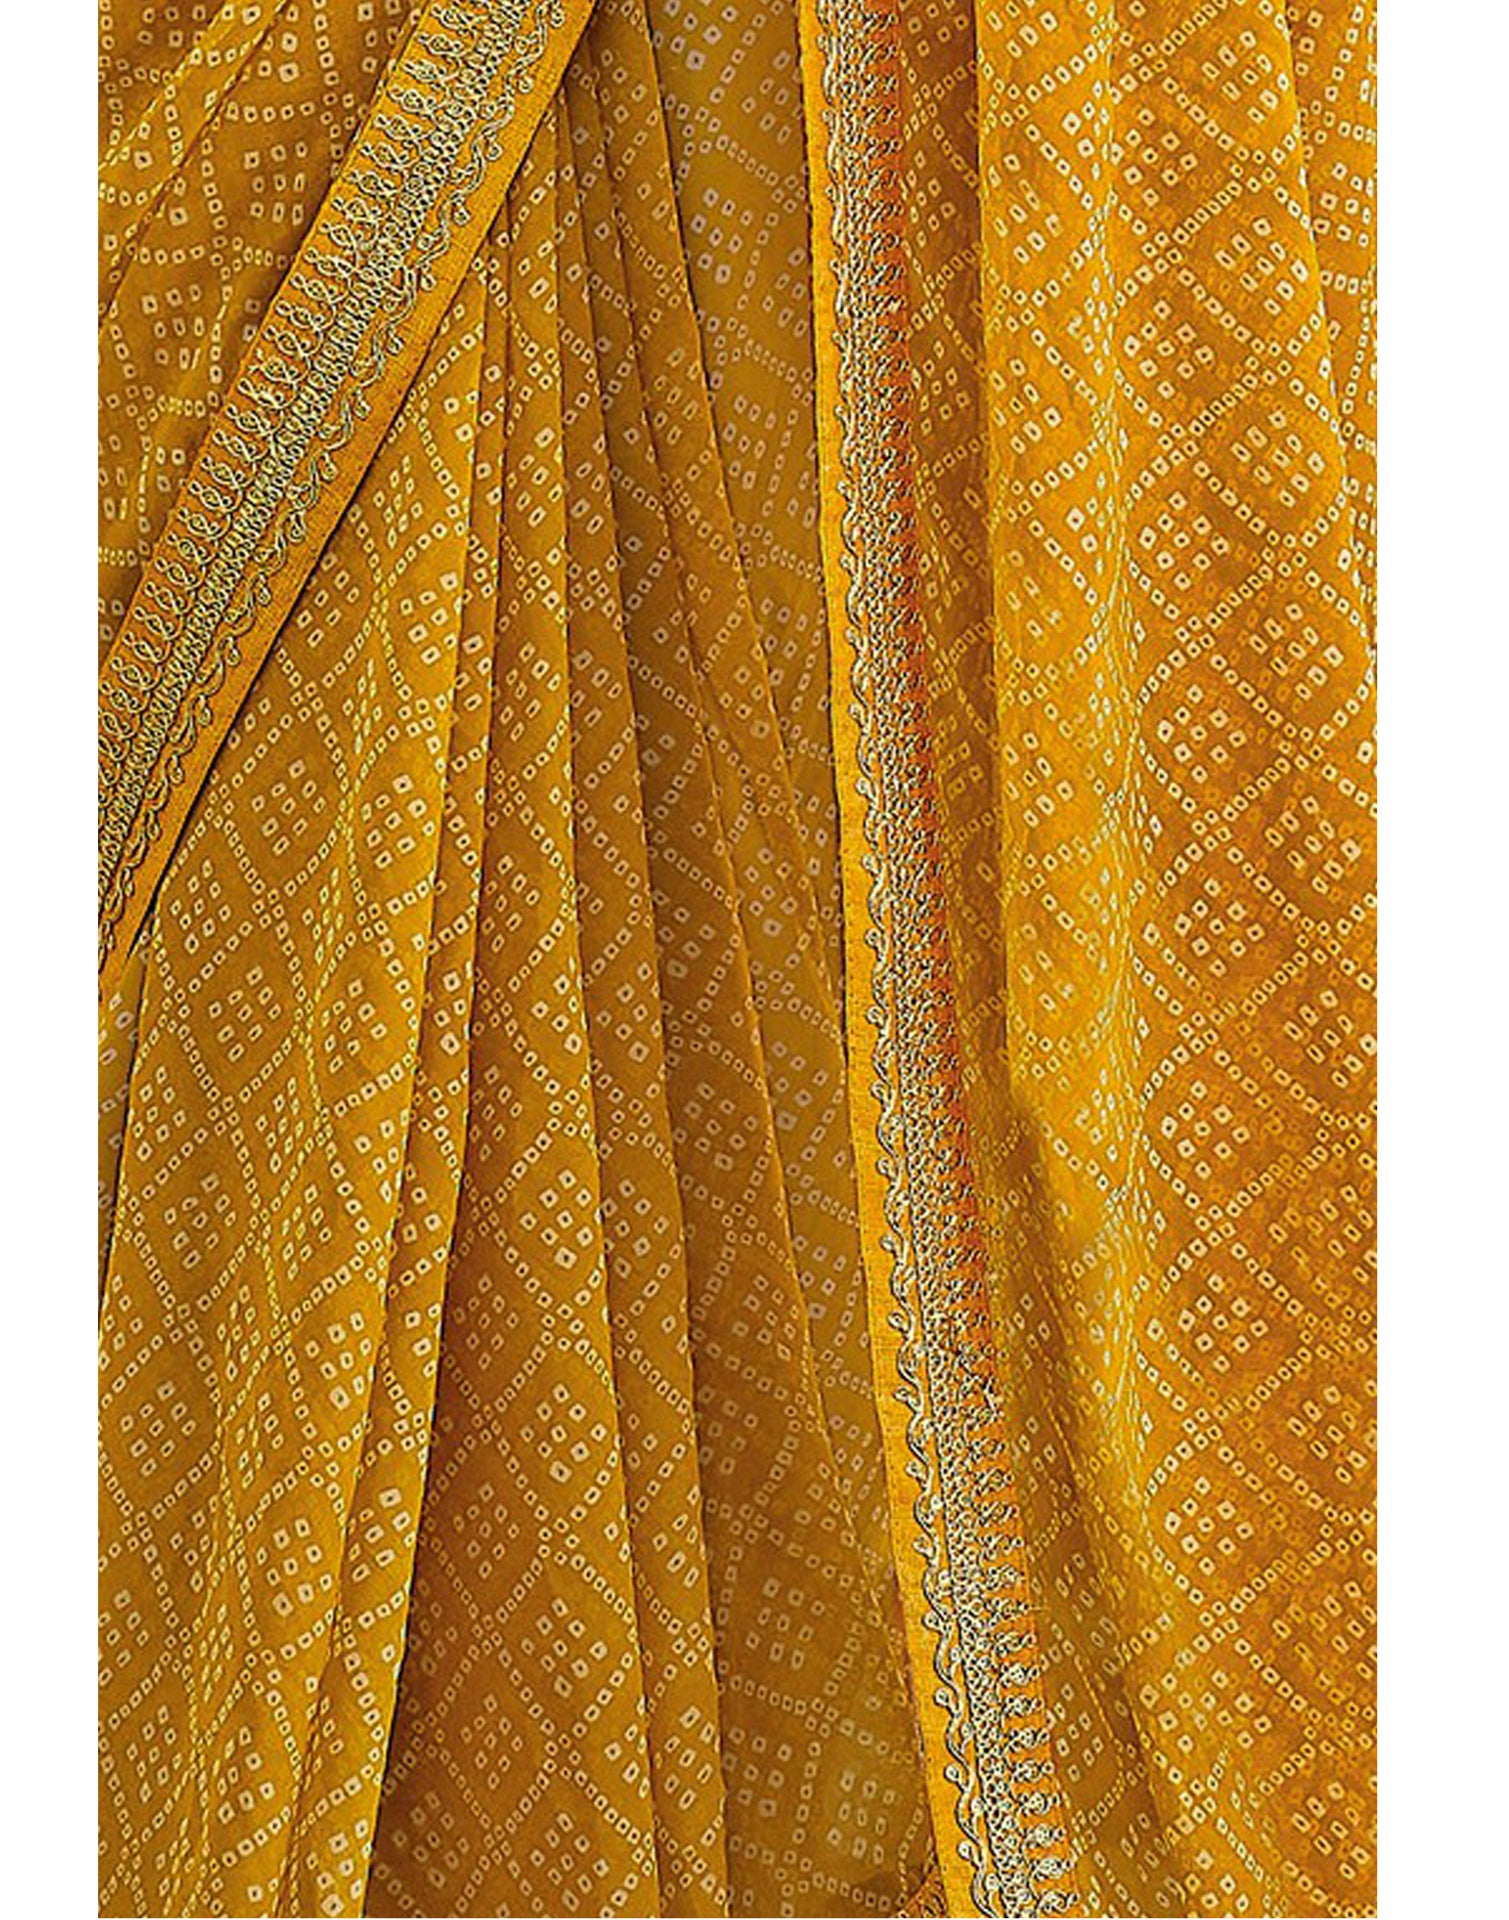 Turmeric Yellow Bandhani Saree with Embroidery Border | Leemboodi